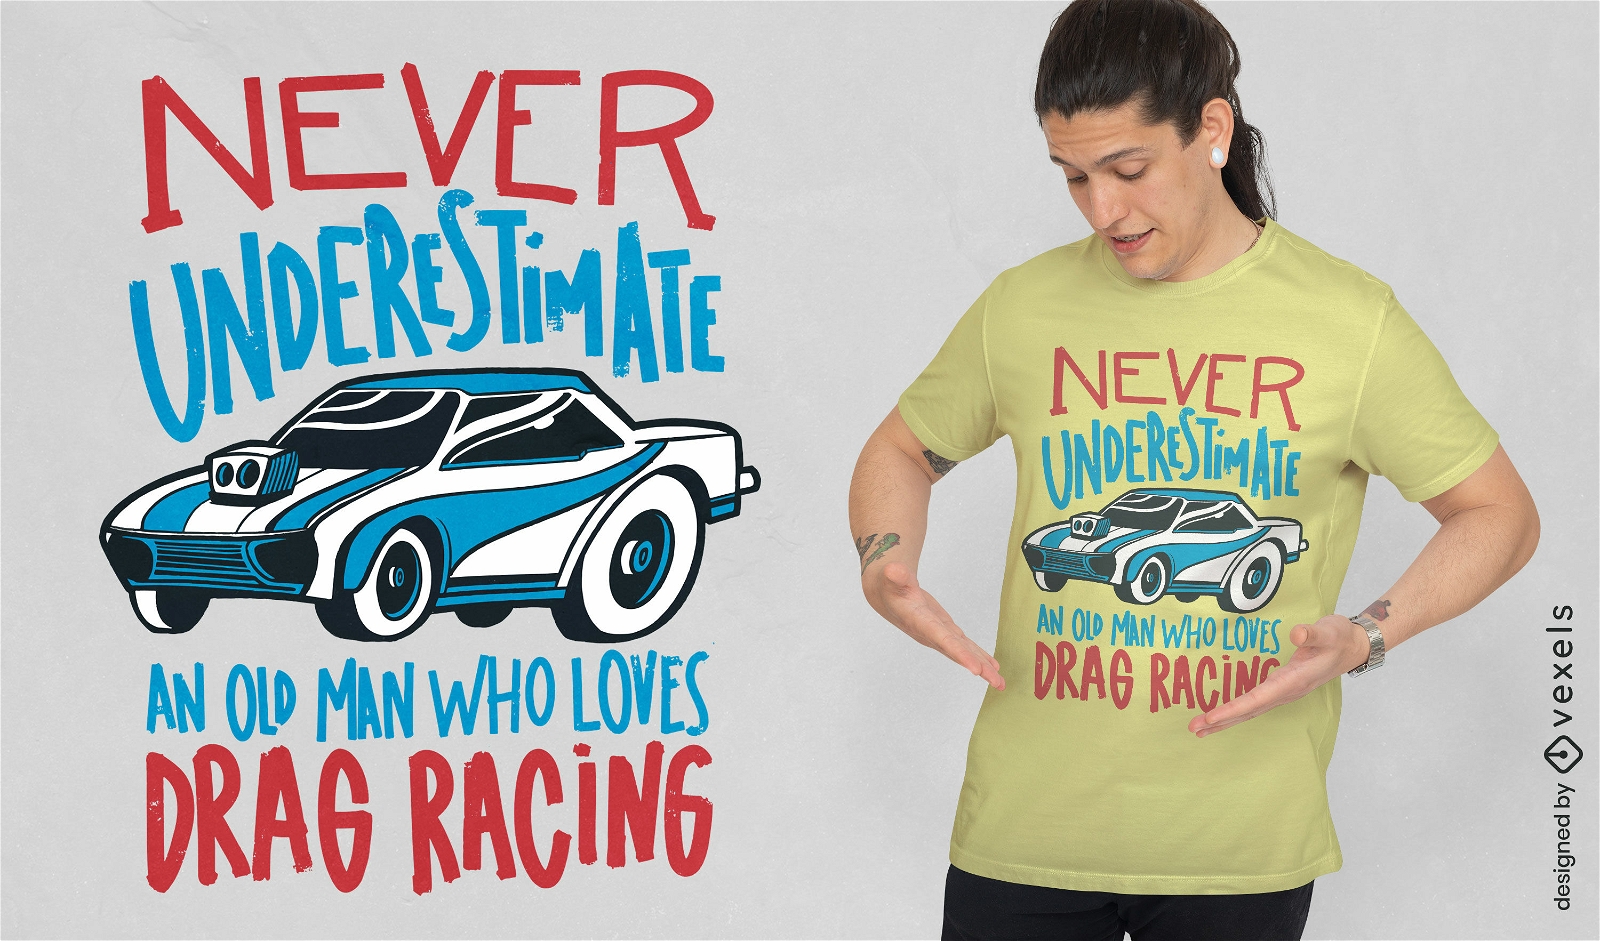 Race car quote t-shirt design